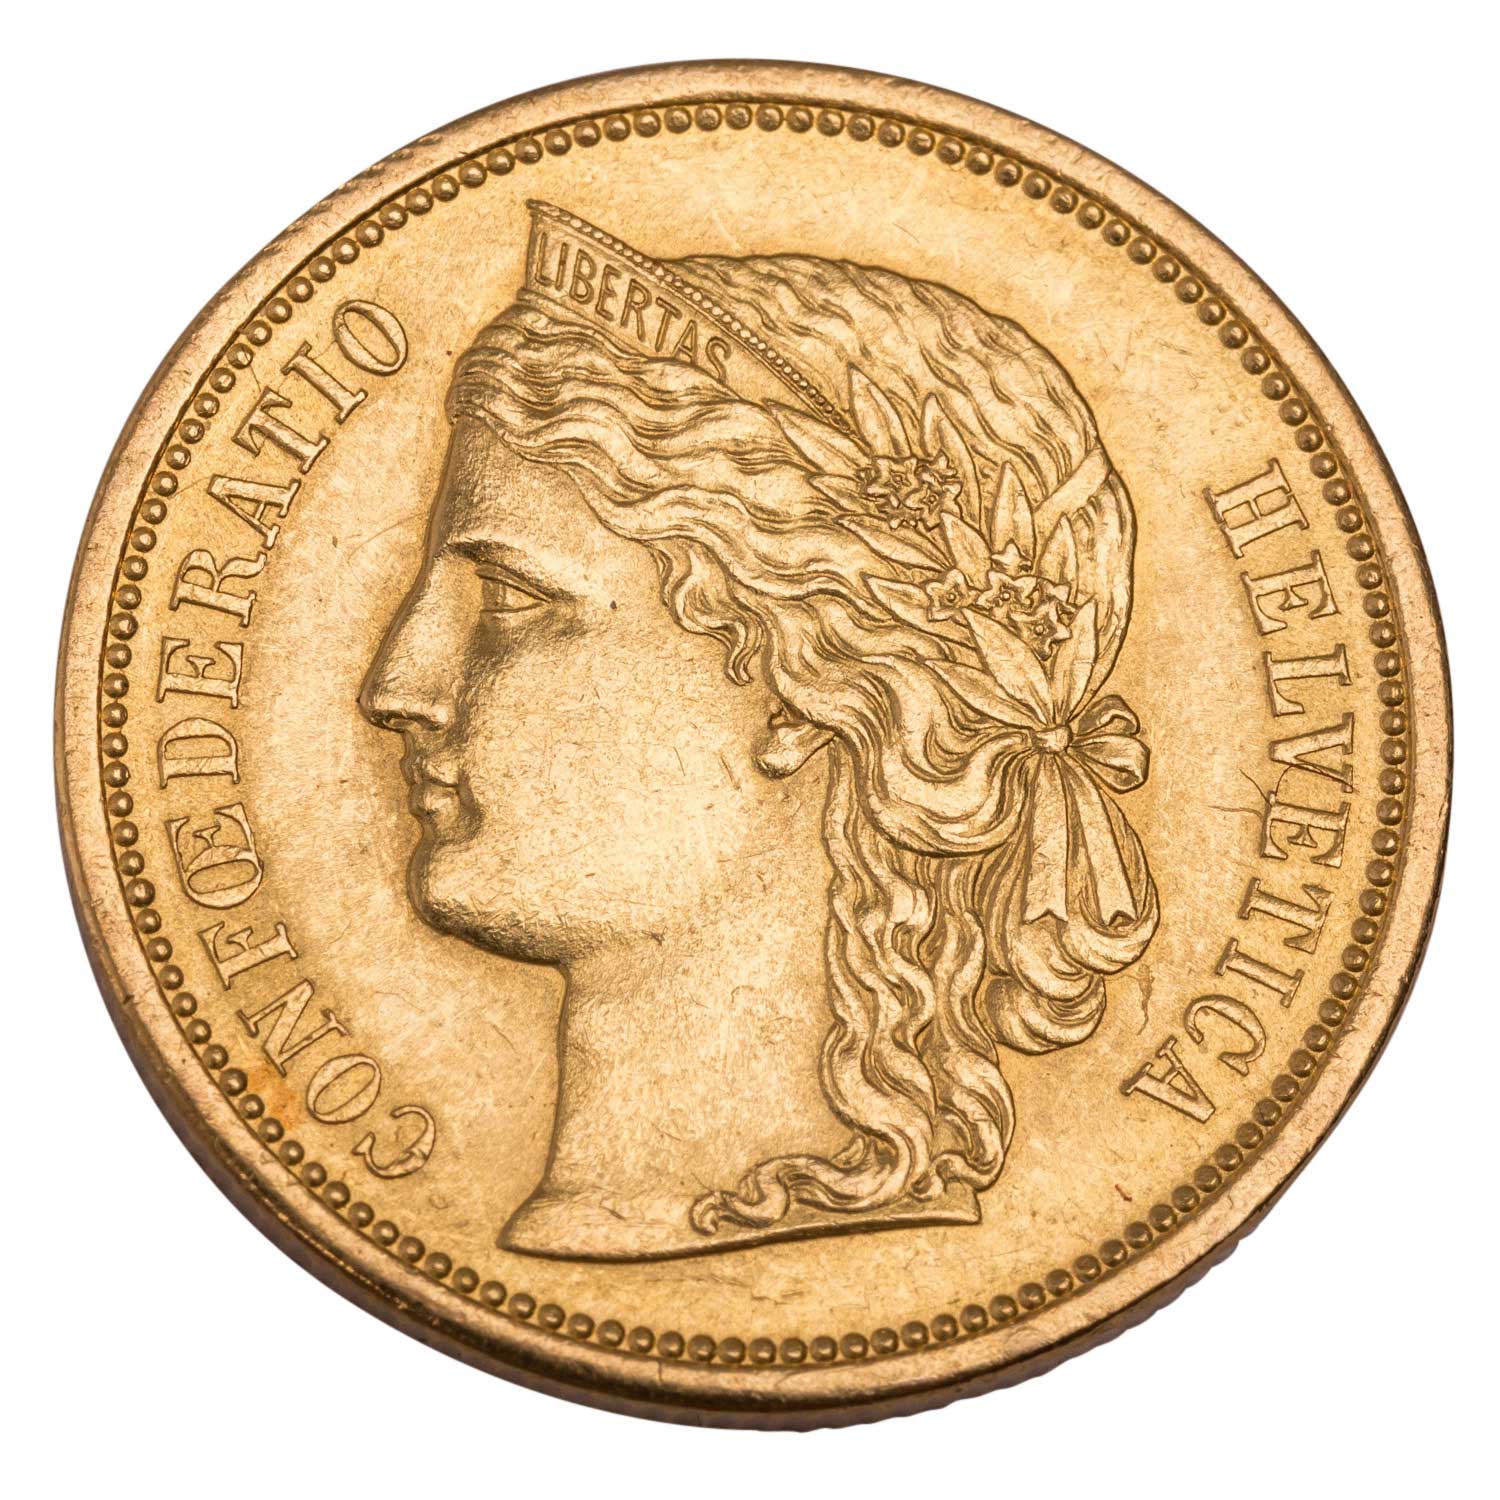 Schweiz - 20 Franken 1883, GOLD, - Image 2 of 2